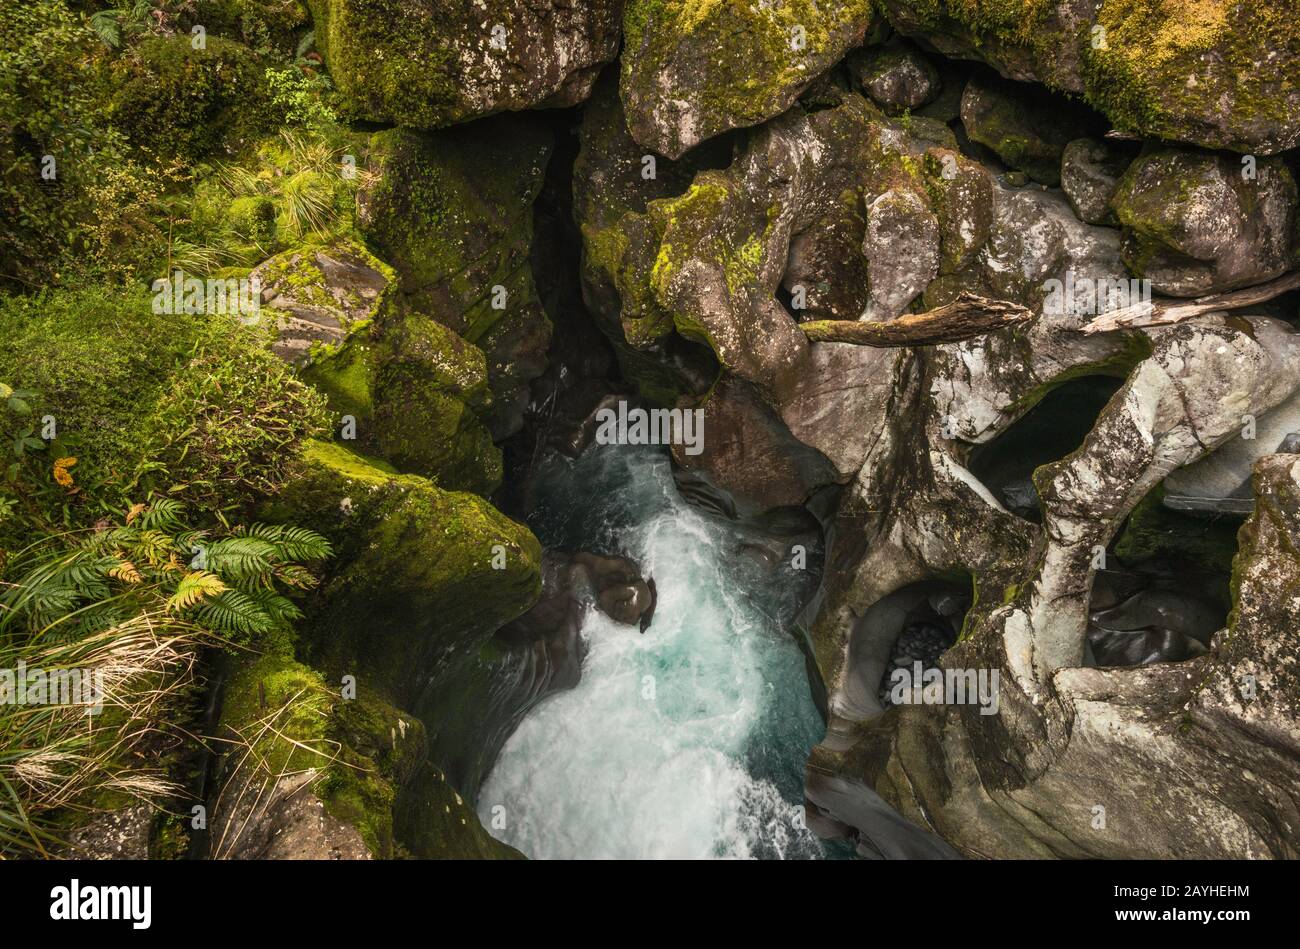 Les cachots se trouvent dans les rochers de la rivière Cleddau, au Chasm, dans le parc national de Fiordland, près de Milford Sound, dans la région de Southland, sur l'île du Sud, en Nouvelle-Zélande Banque D'Images